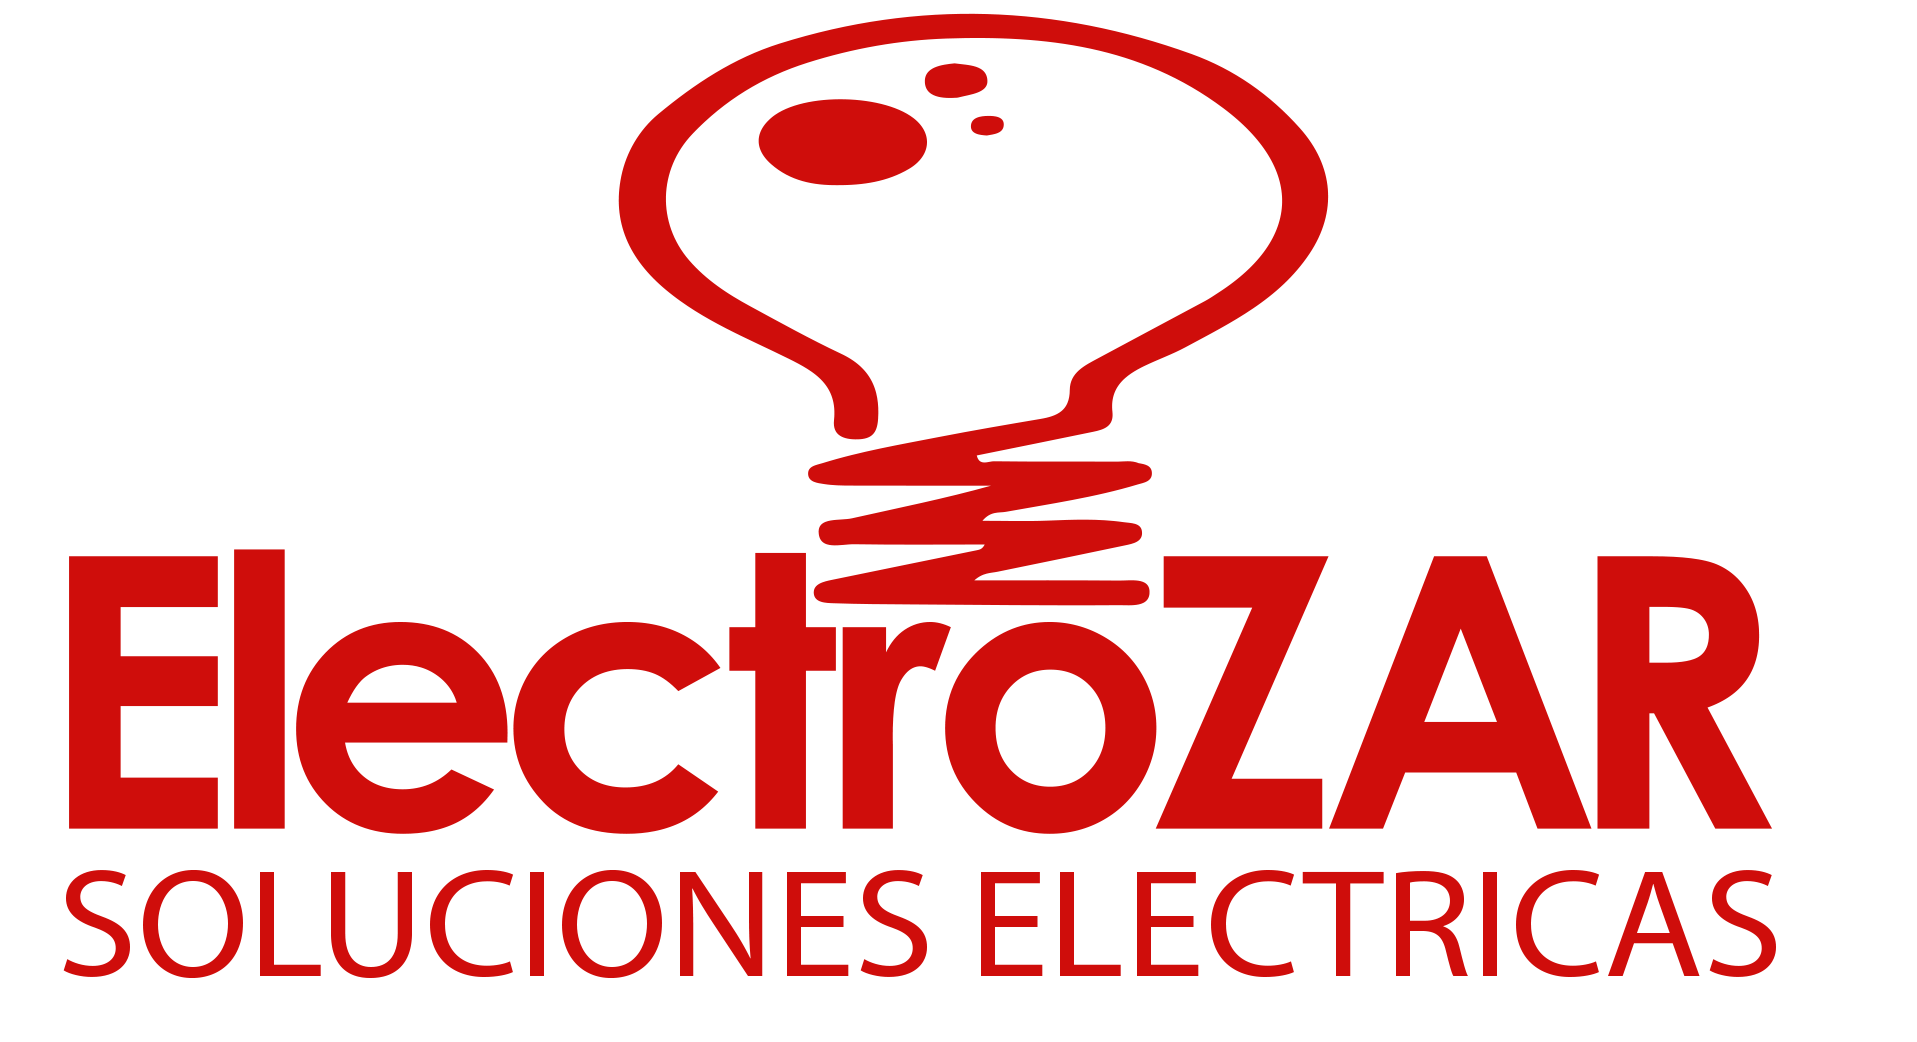 ElectroZAR - Soluciones Electricas Logo